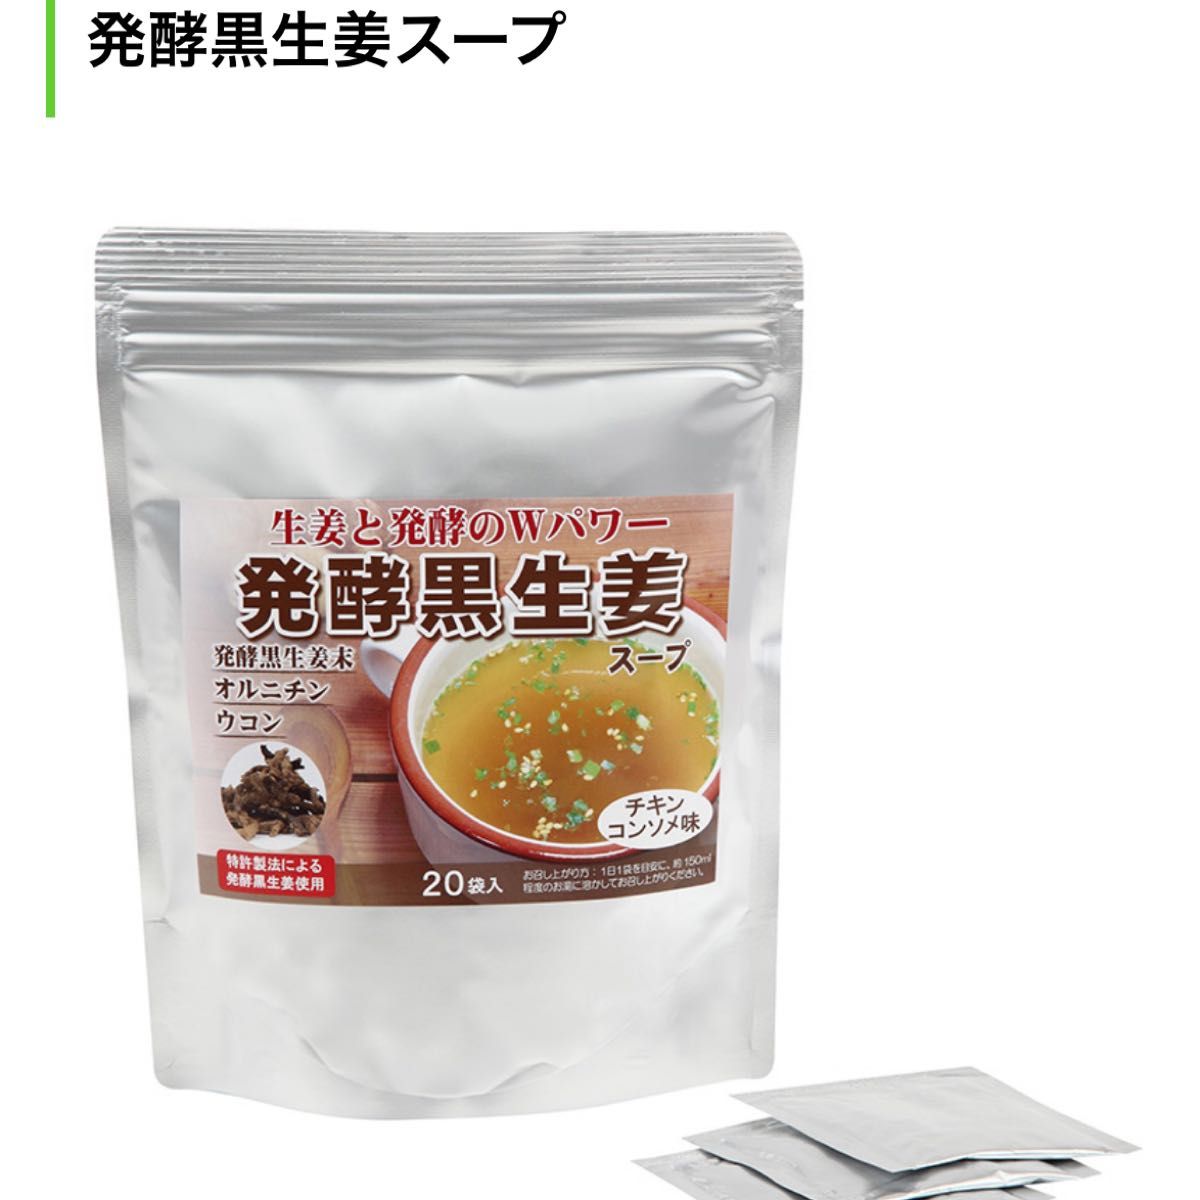 発酵黒生姜スープ チキンコンソメ味20袋入